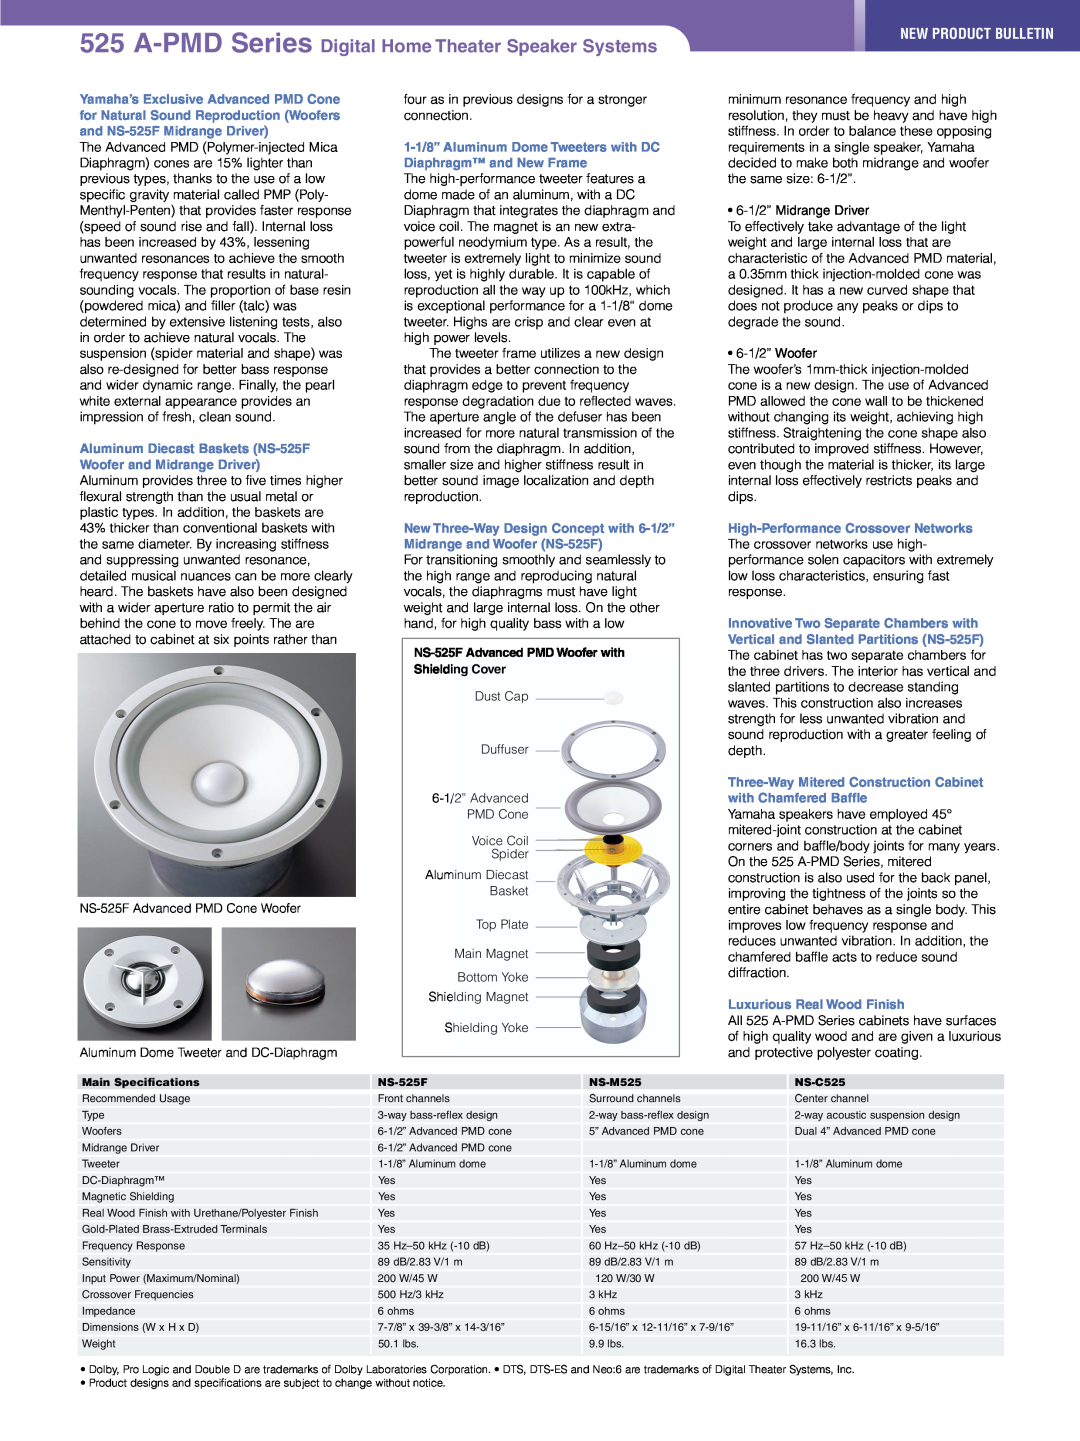 Yamaha NS-C525, NS-M525, NS-525F manual New Product Bulletin 